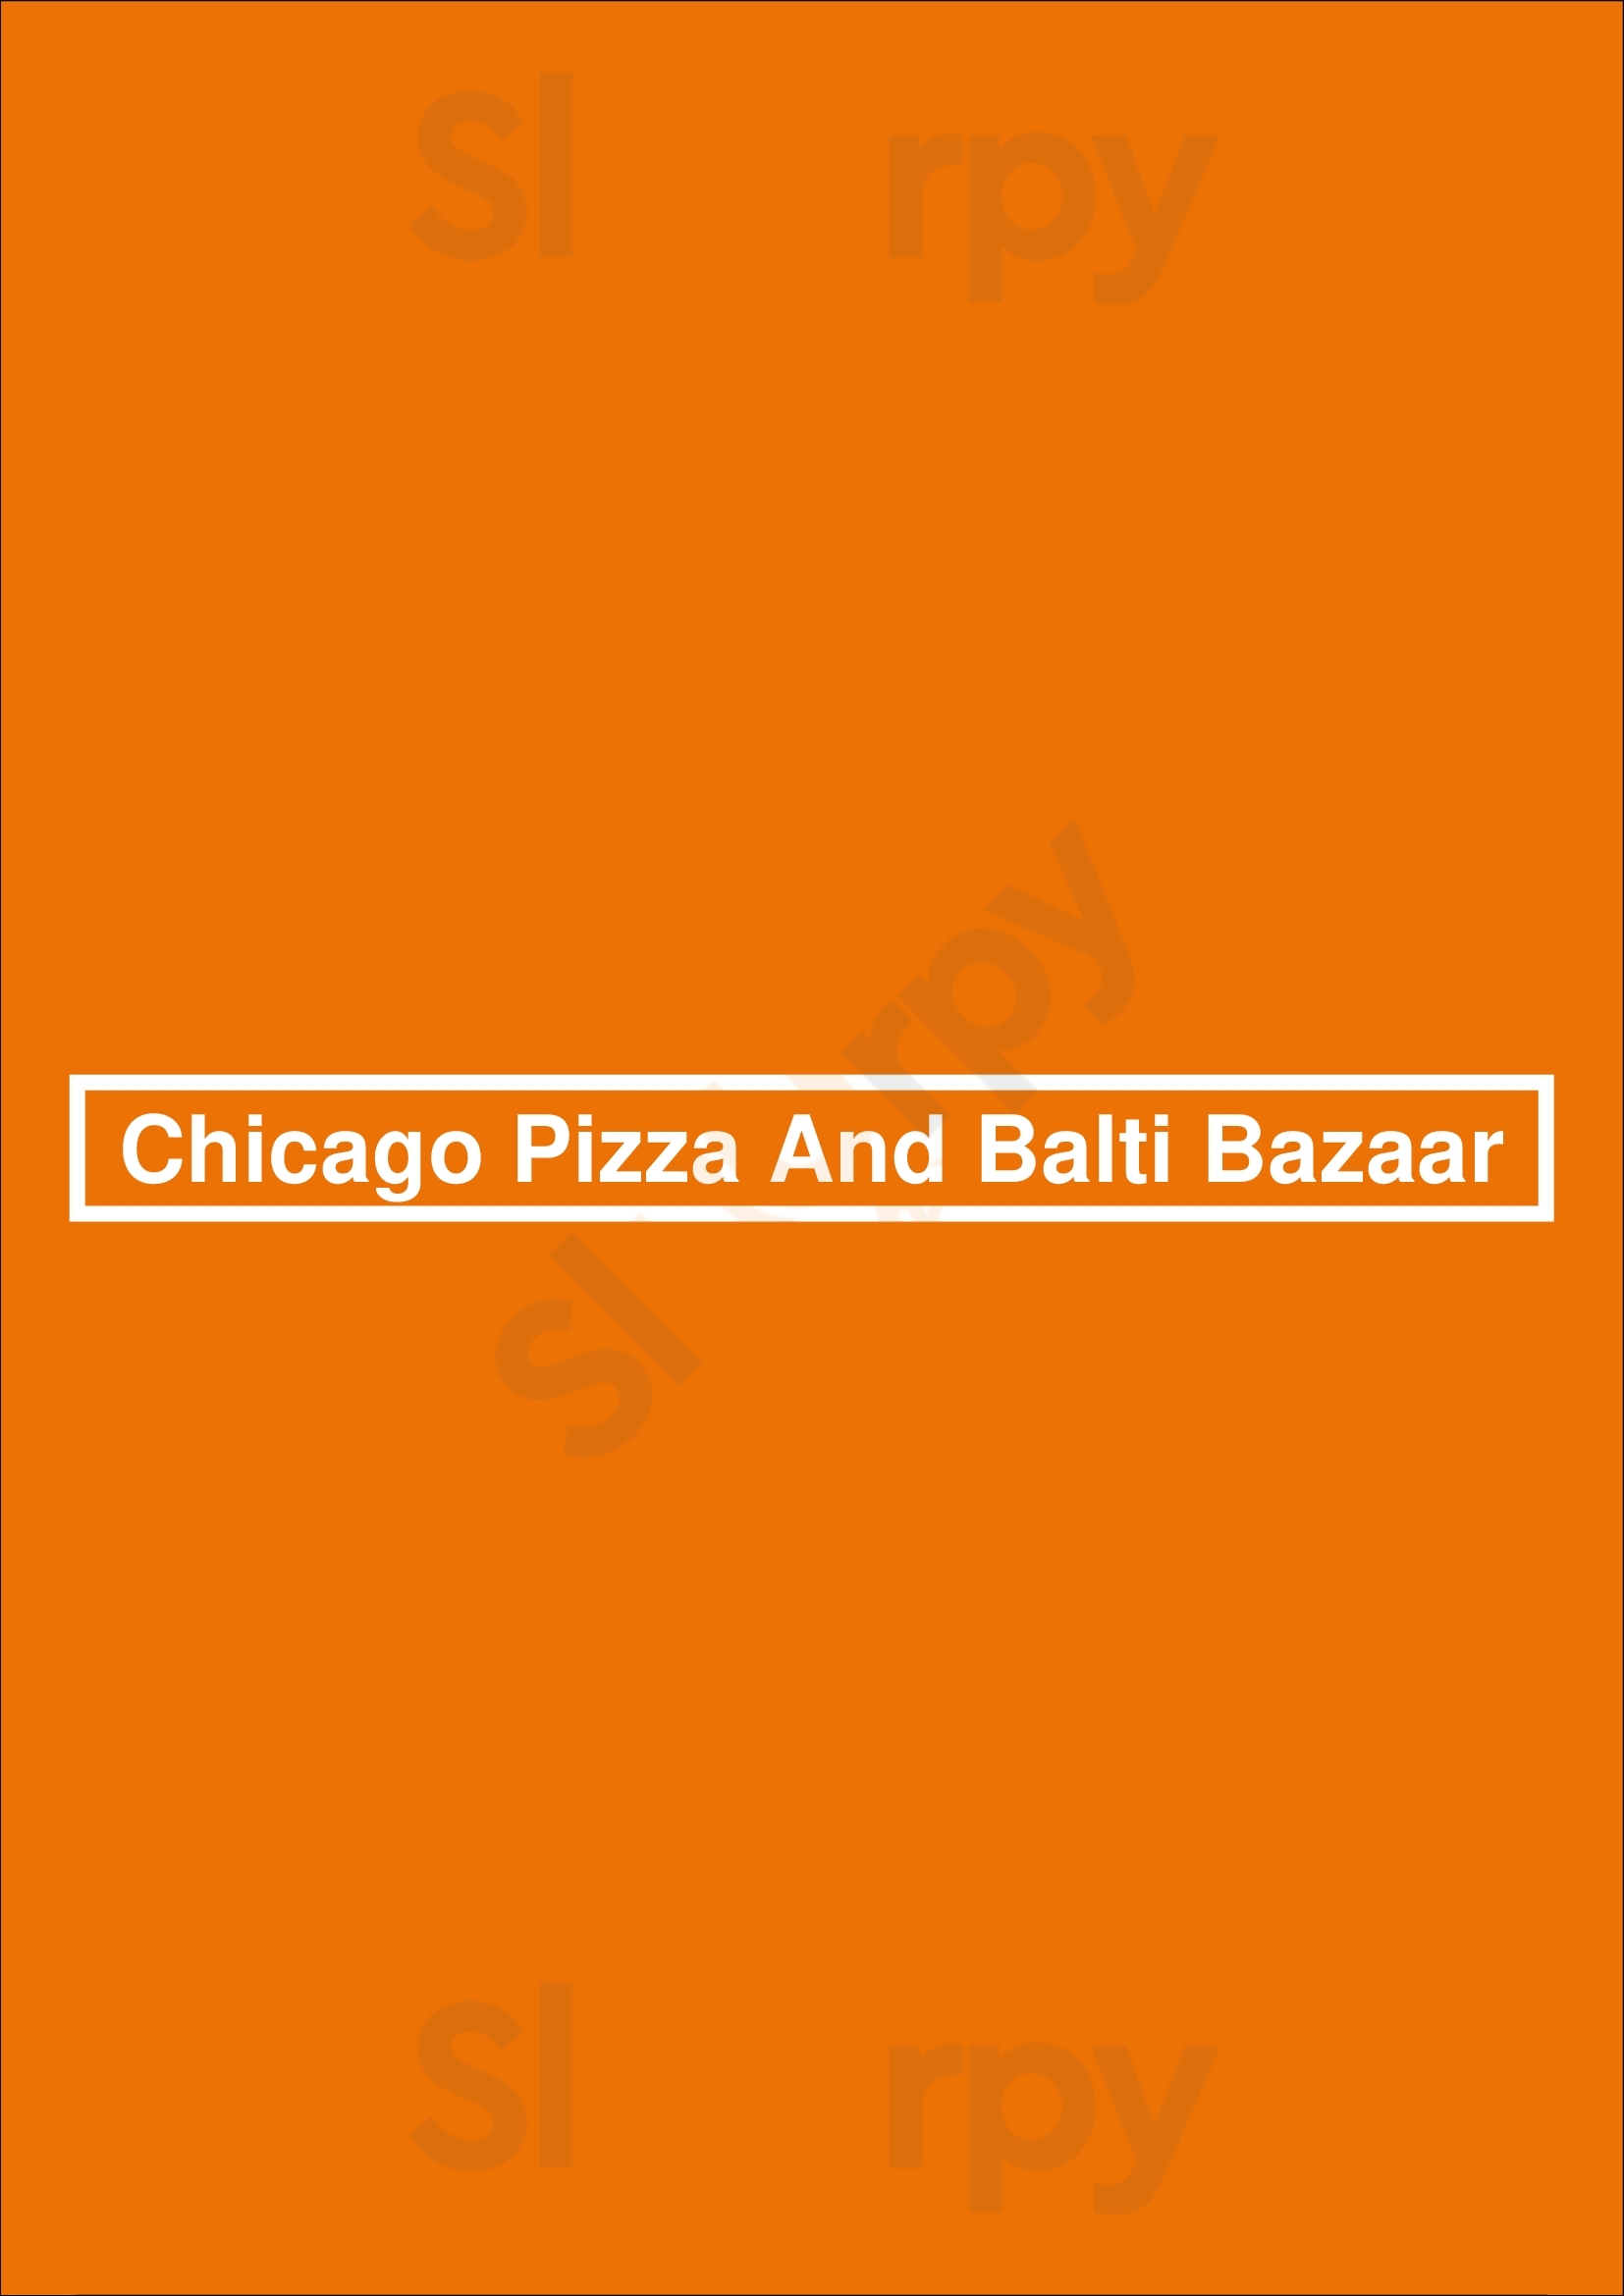 Chicago Pizza And Balti Bazaar Leeds Menu - 1